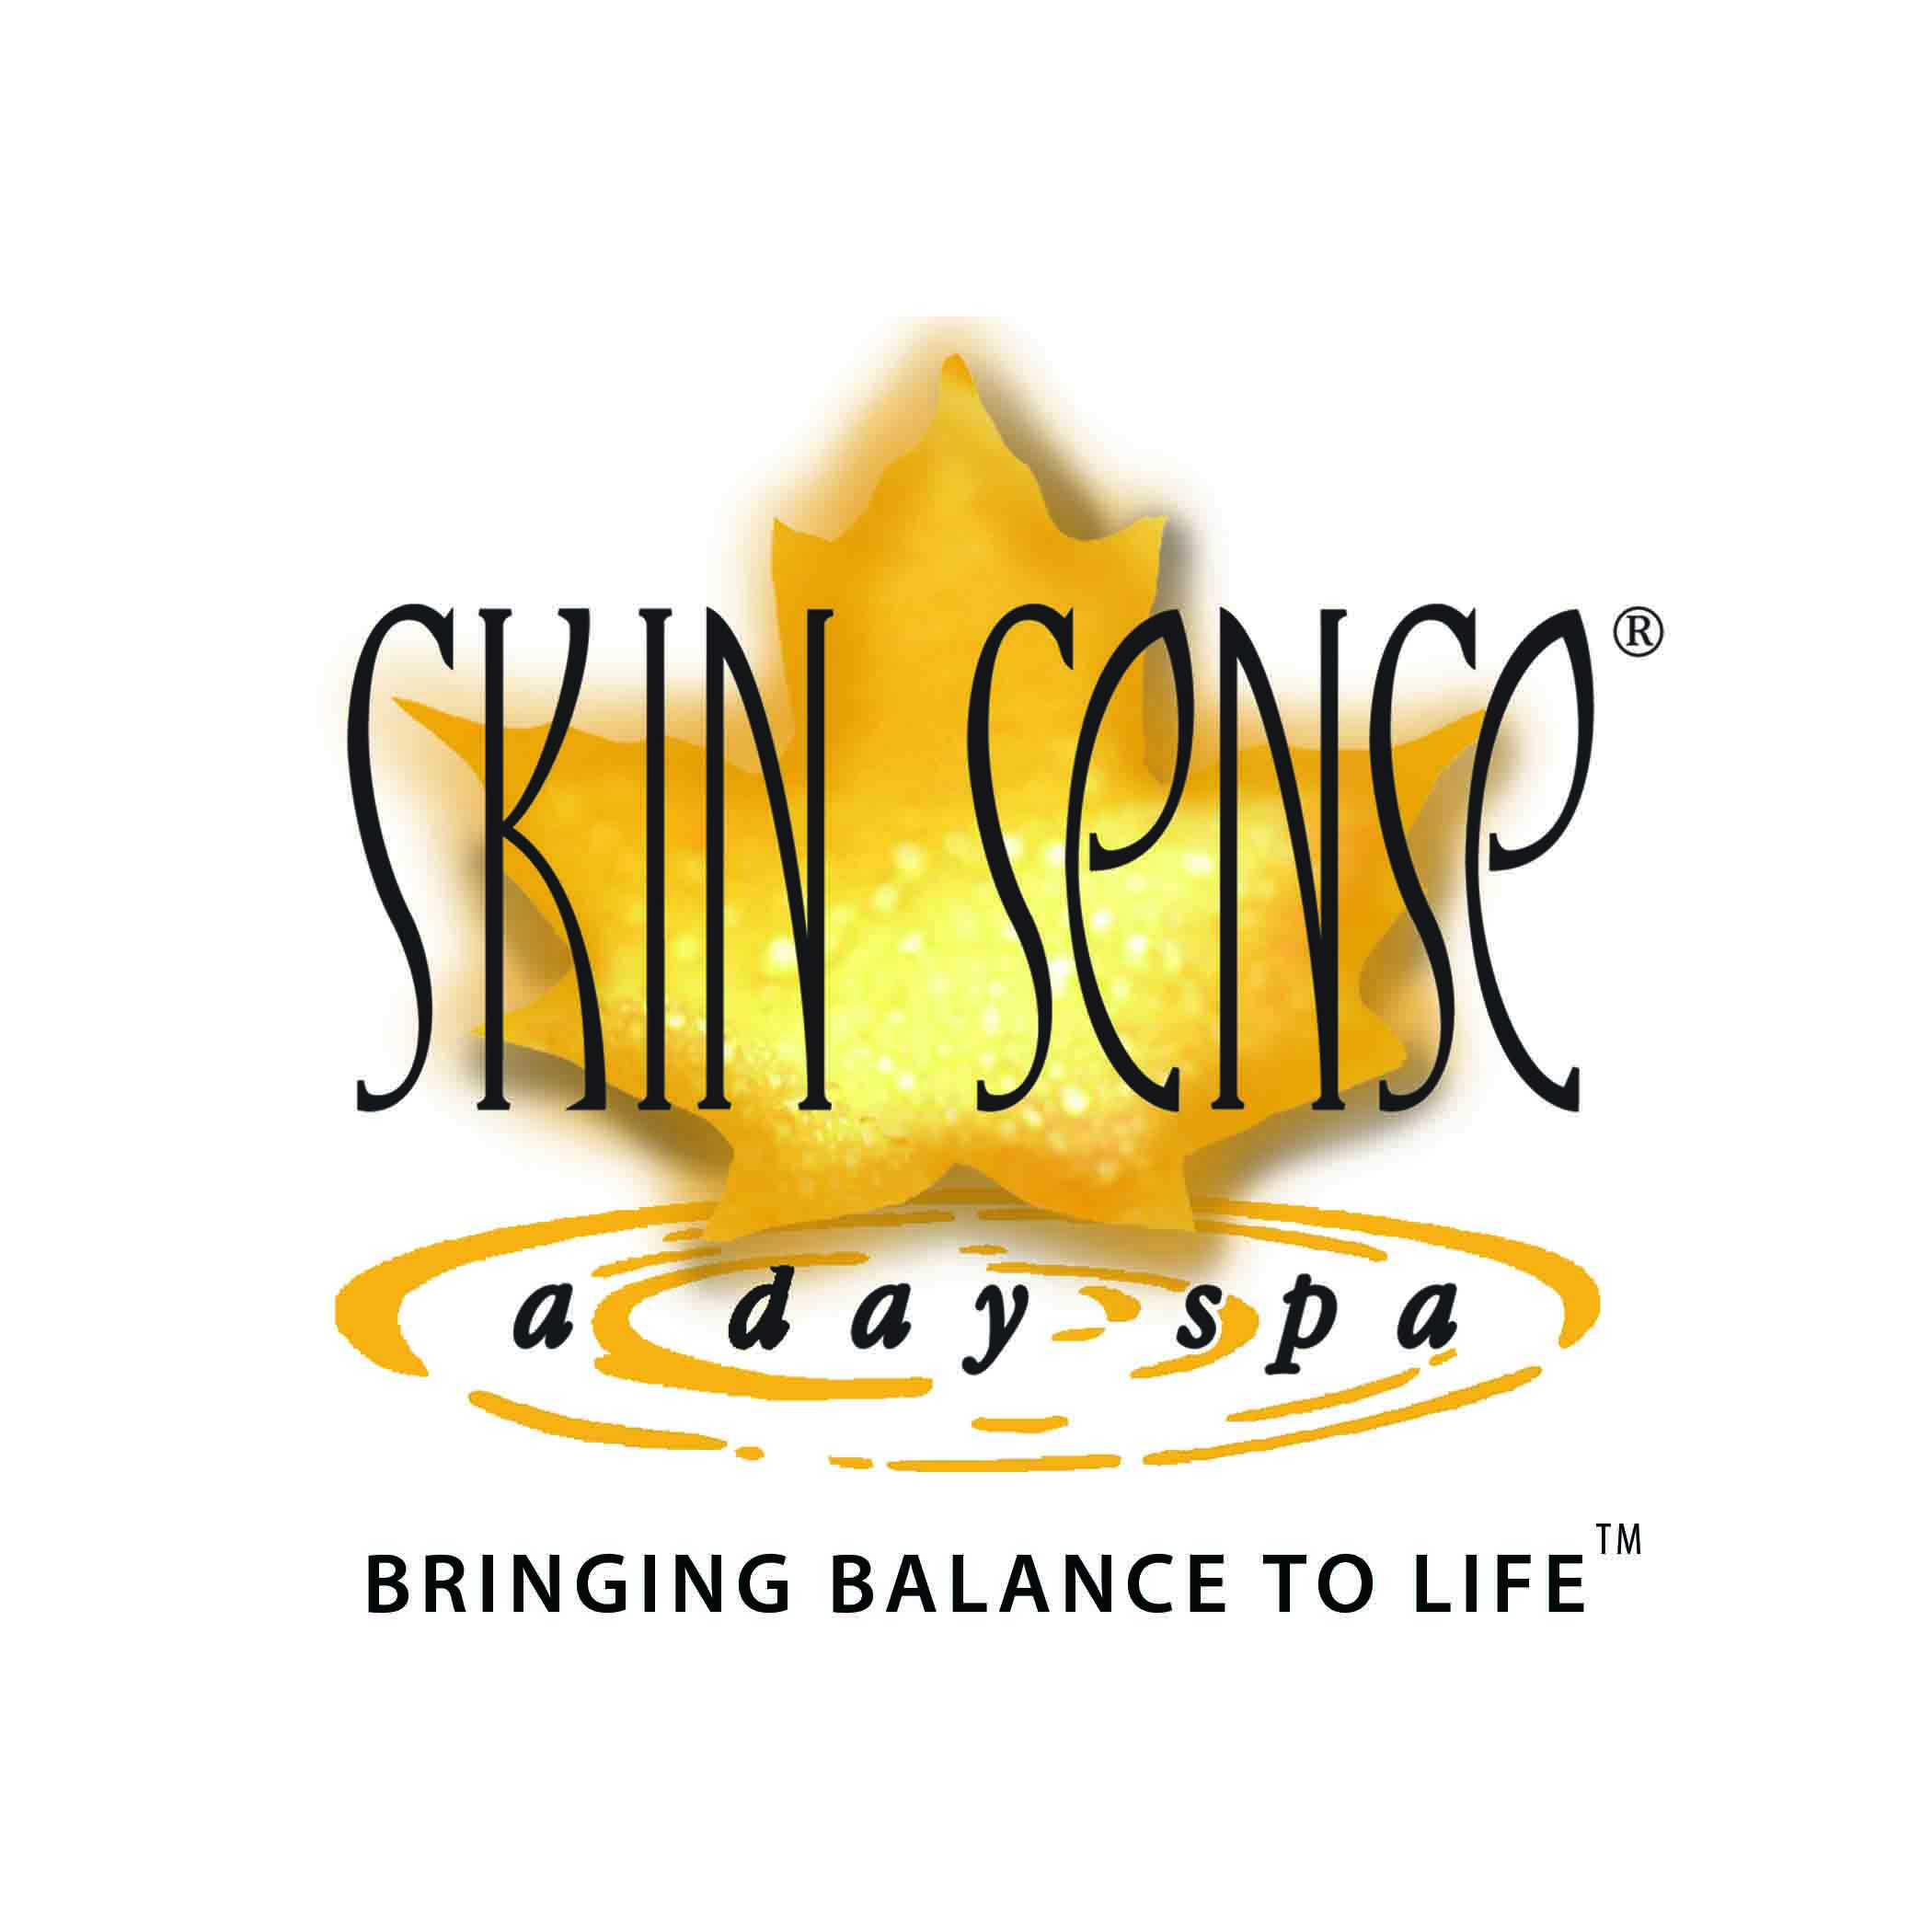 Skin Sense, a day spa